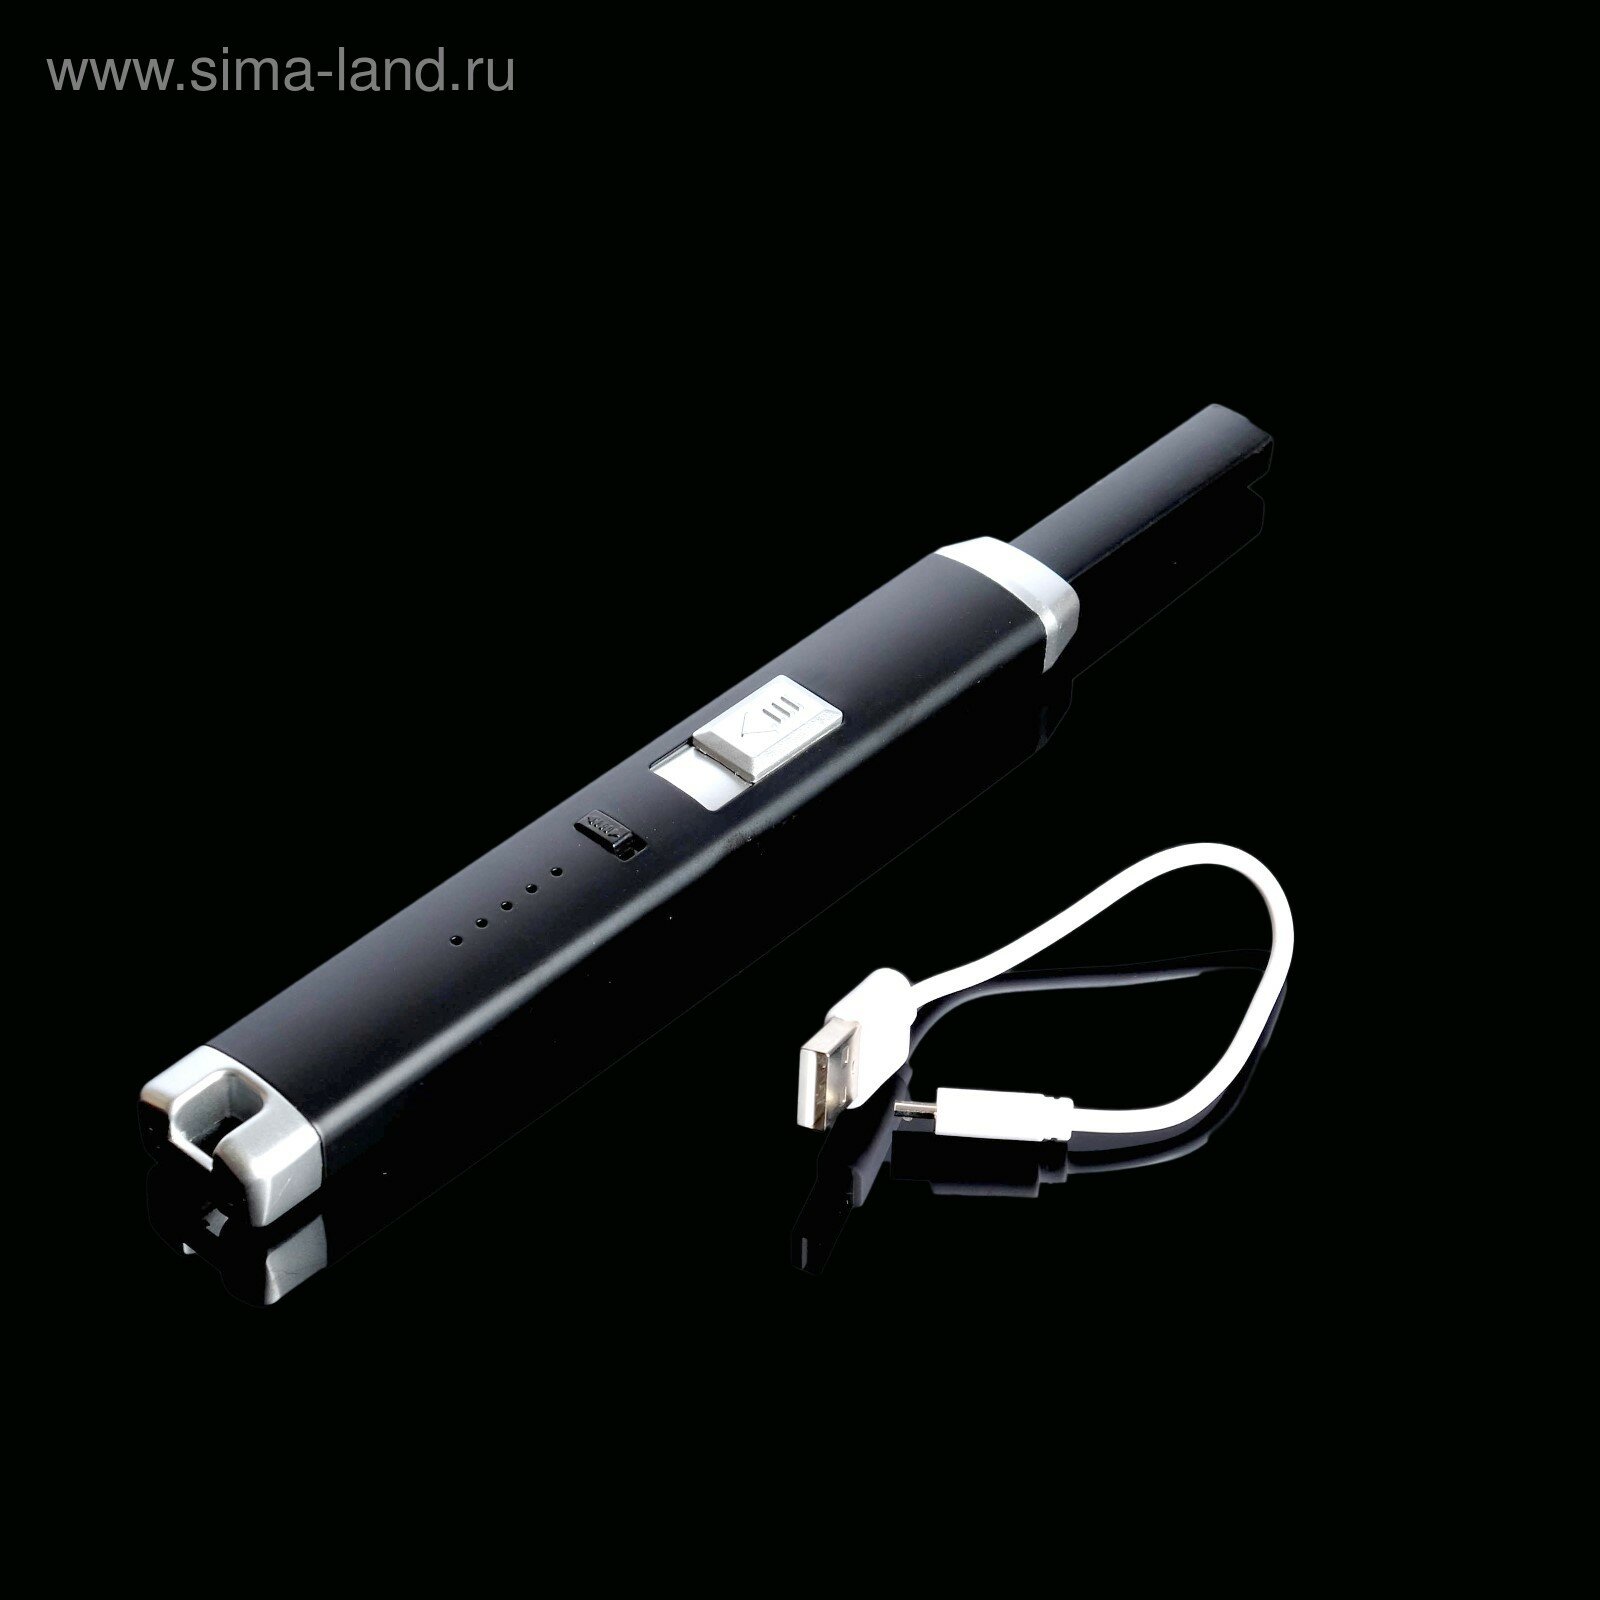 Зажигалка электронная, кухонная, 23 х 2.5 х 1.5 см, USB, черная